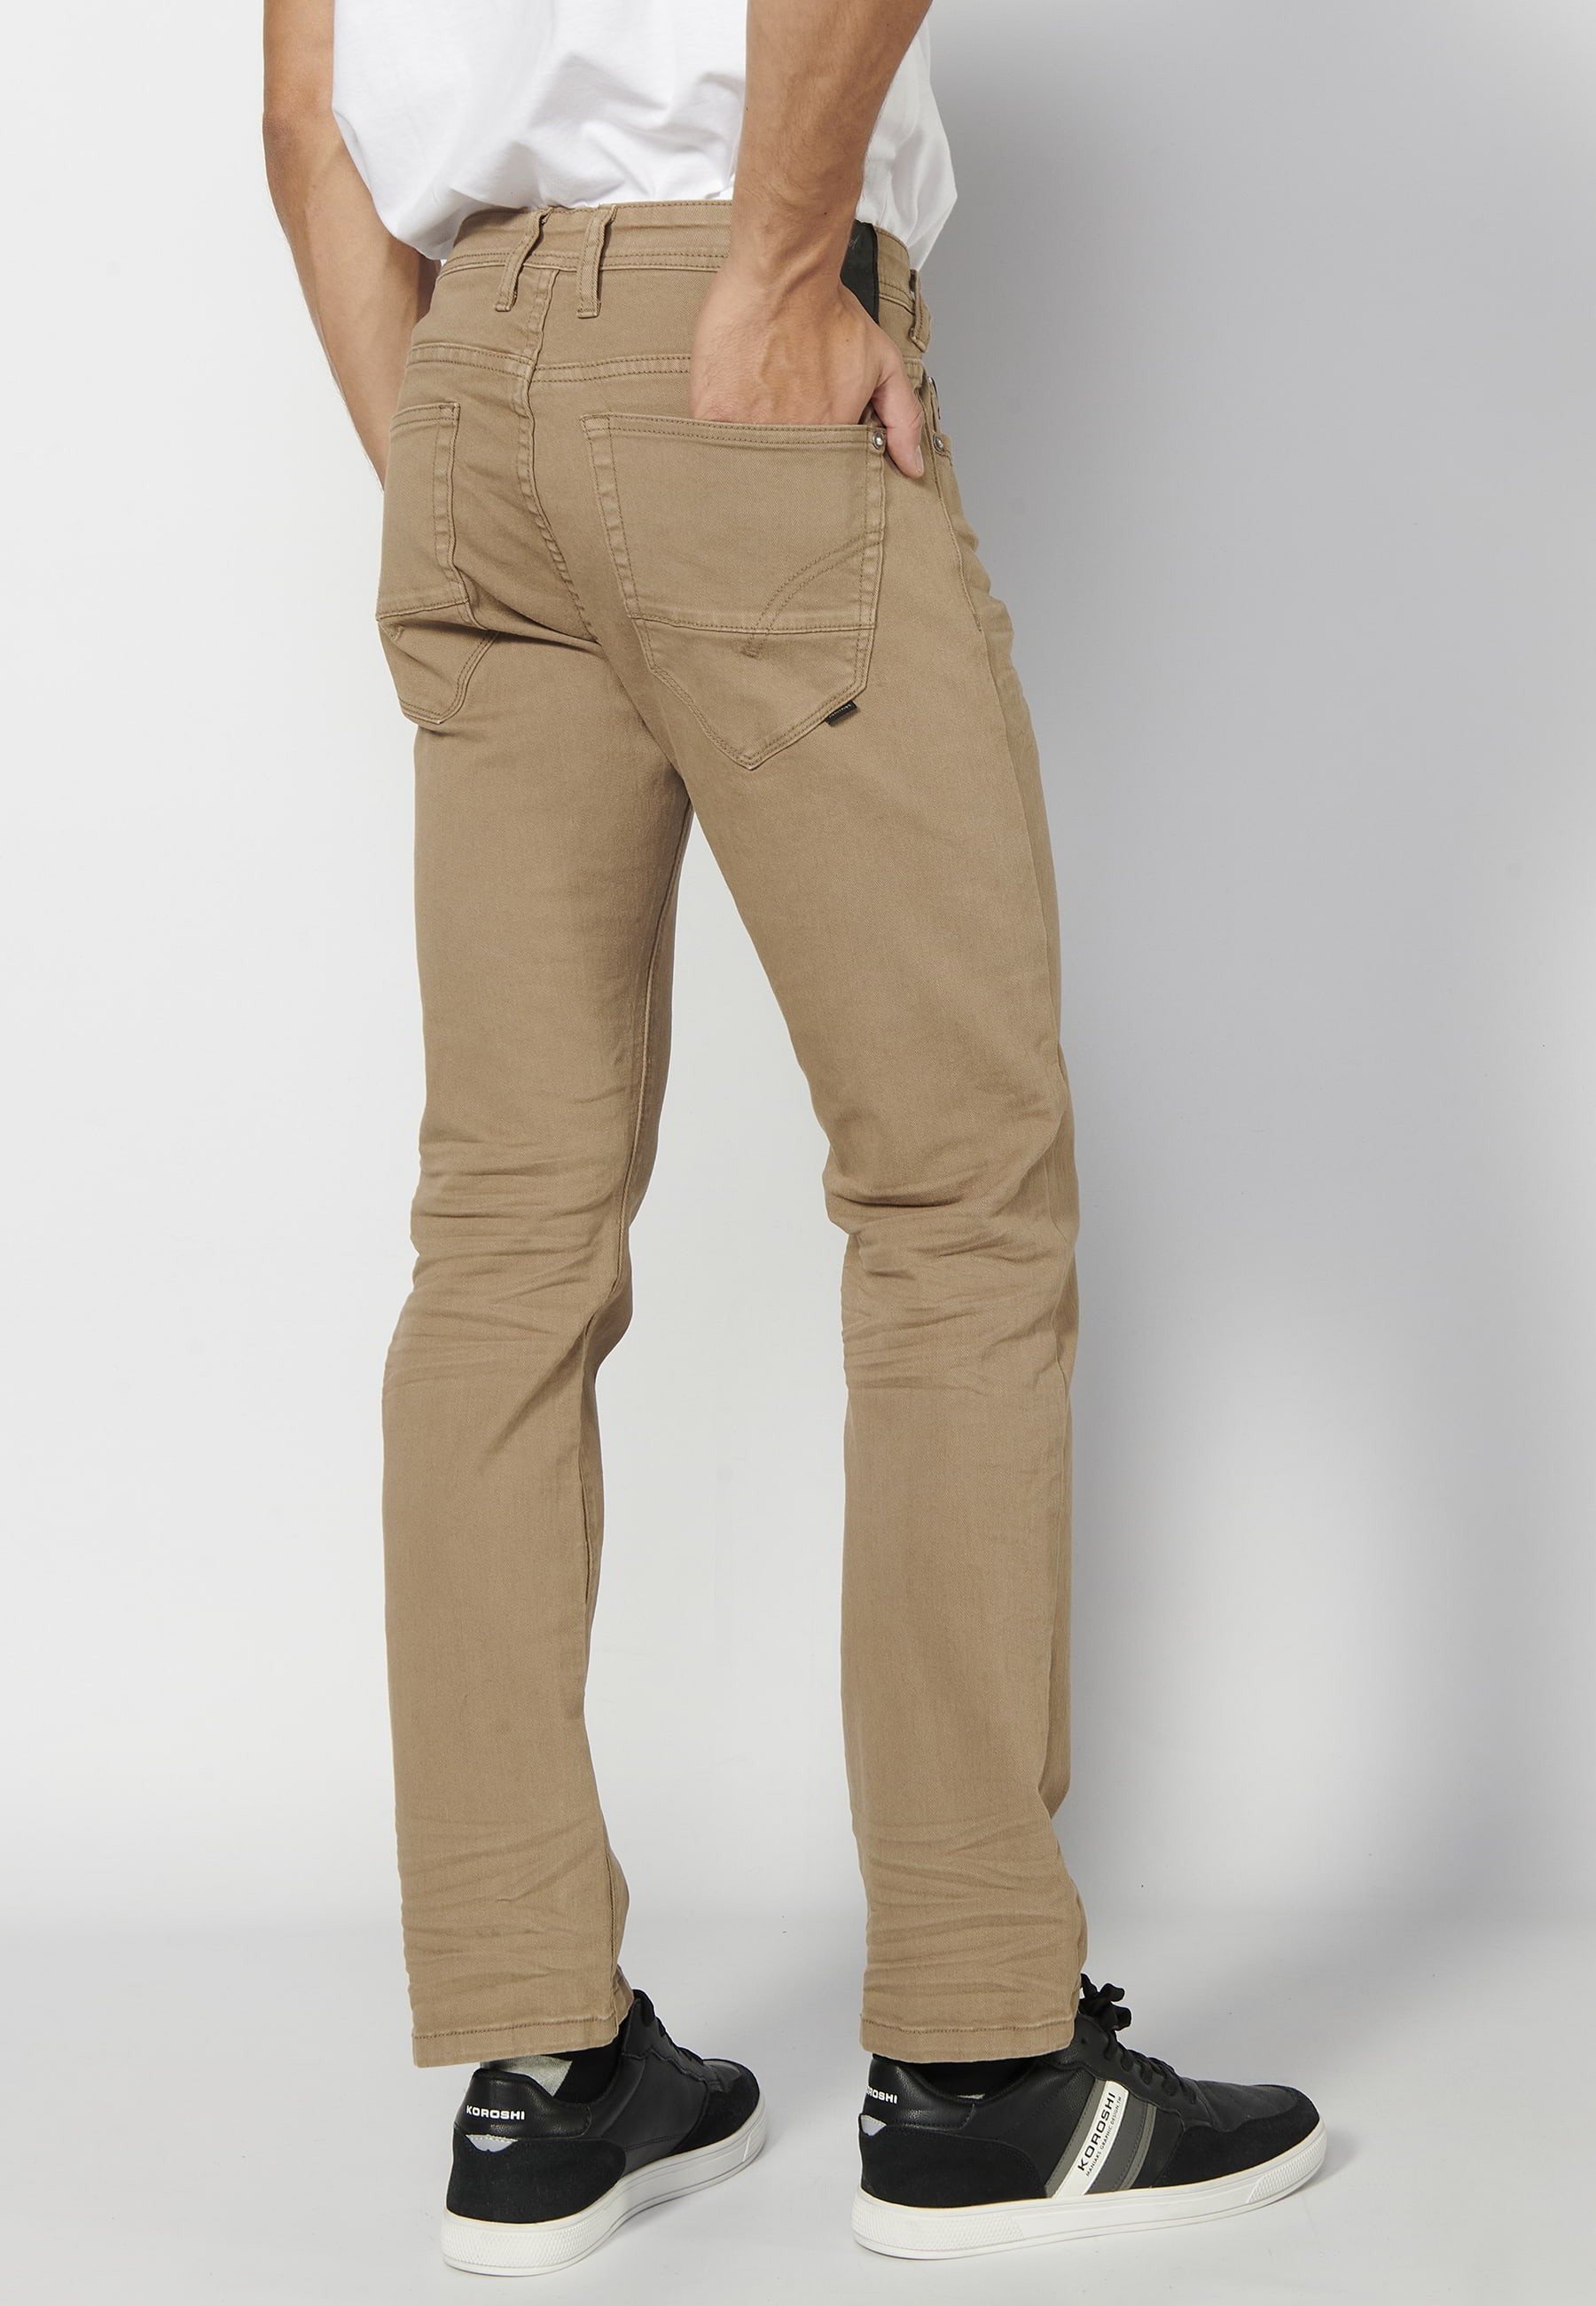 Pantalón largo straigth regular fit, con cinco bolsillos, color Beige, para Hombre 5